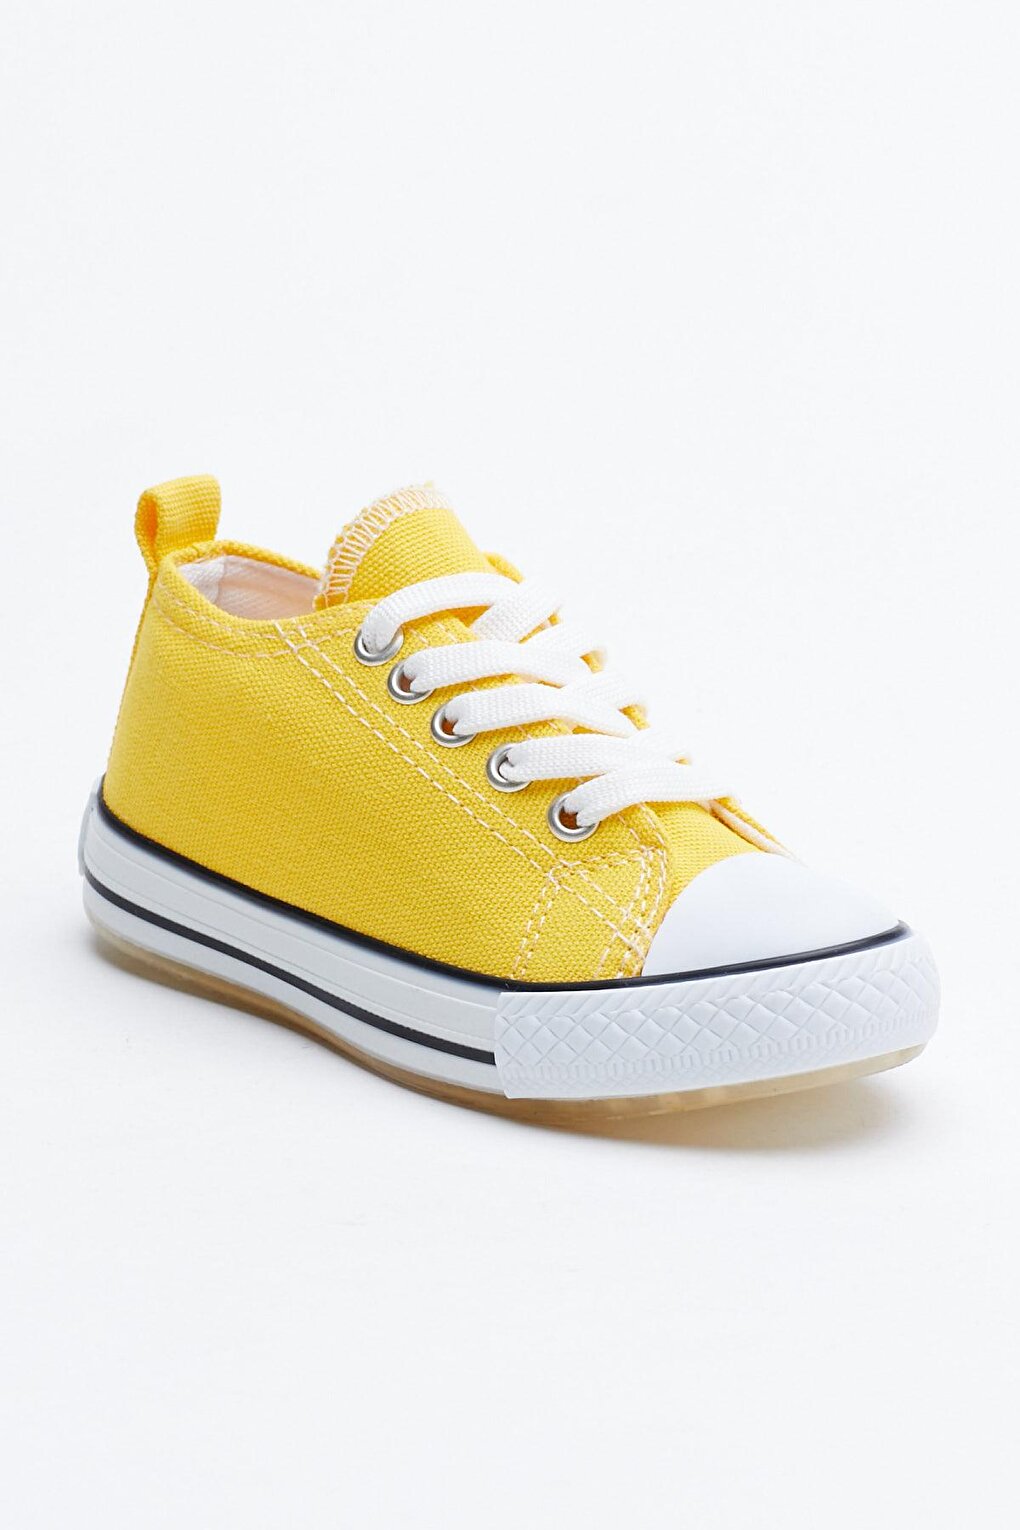 Детская желтая светящаяся спортивная обувь унисекс Tb998 TONNY BLACK